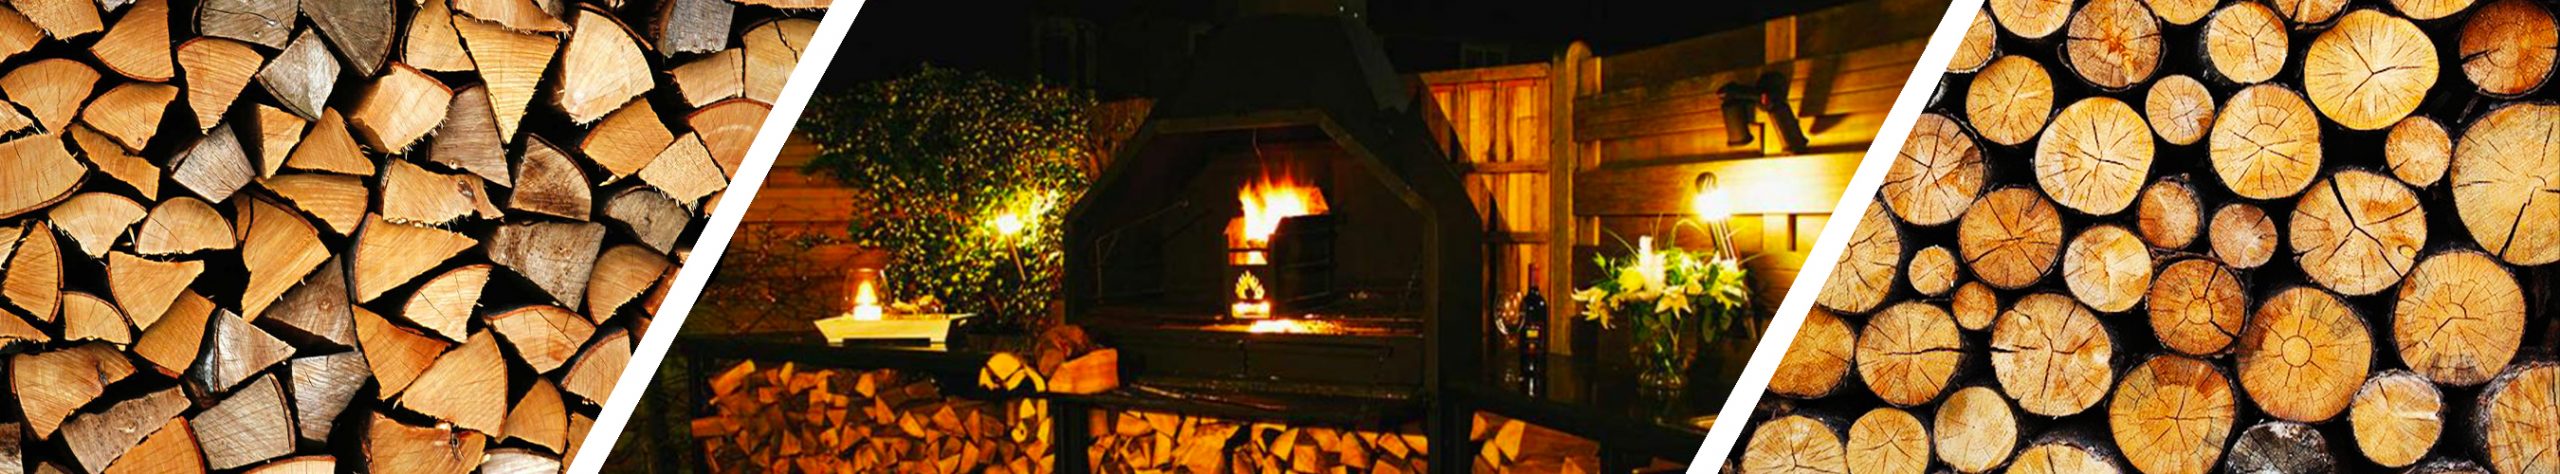 Barbecue a Legna - Carbone